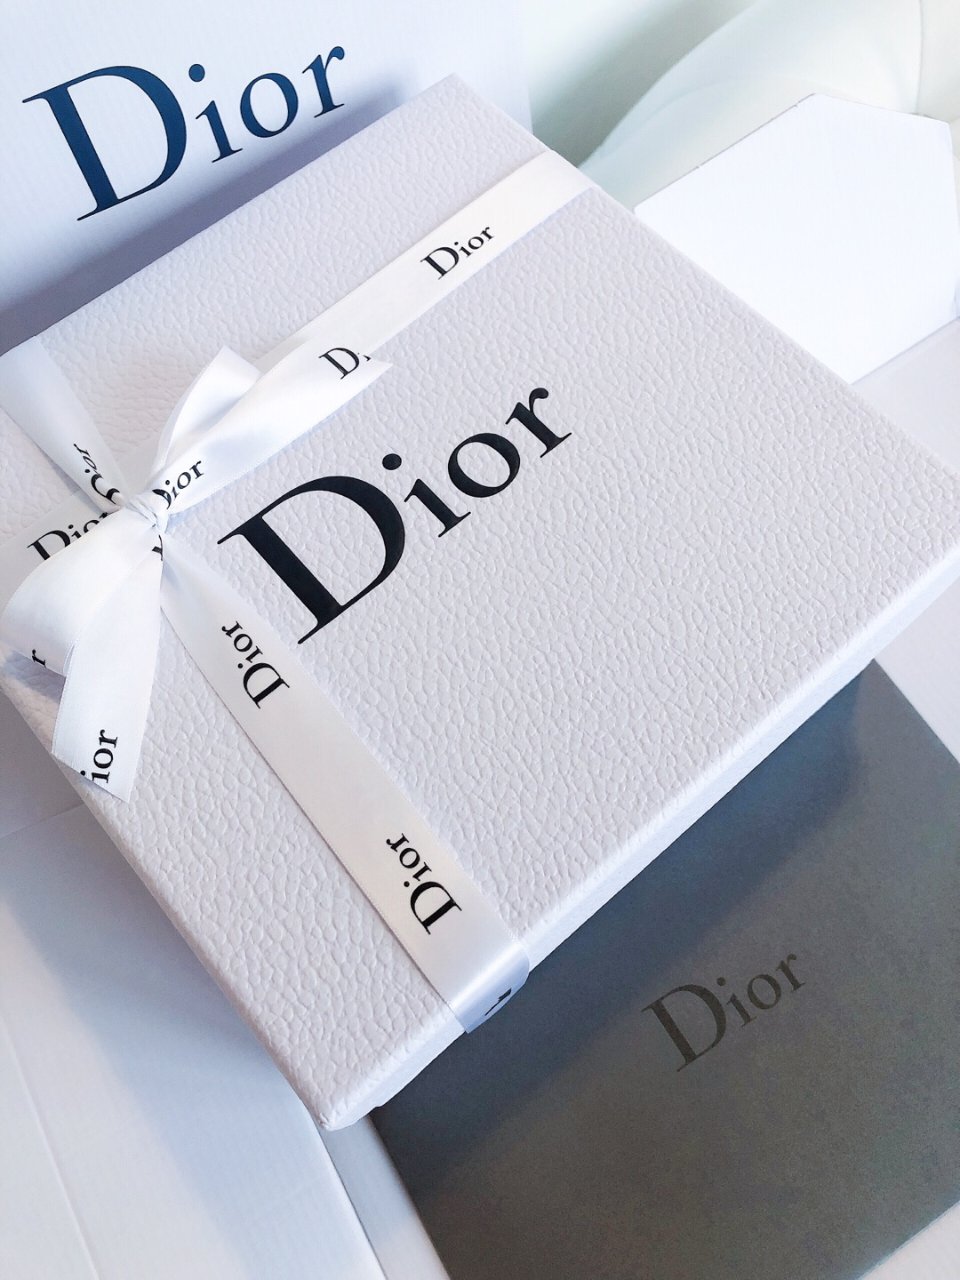 Dior 迪奥,Dior 迪奥,Dior美容爱用品